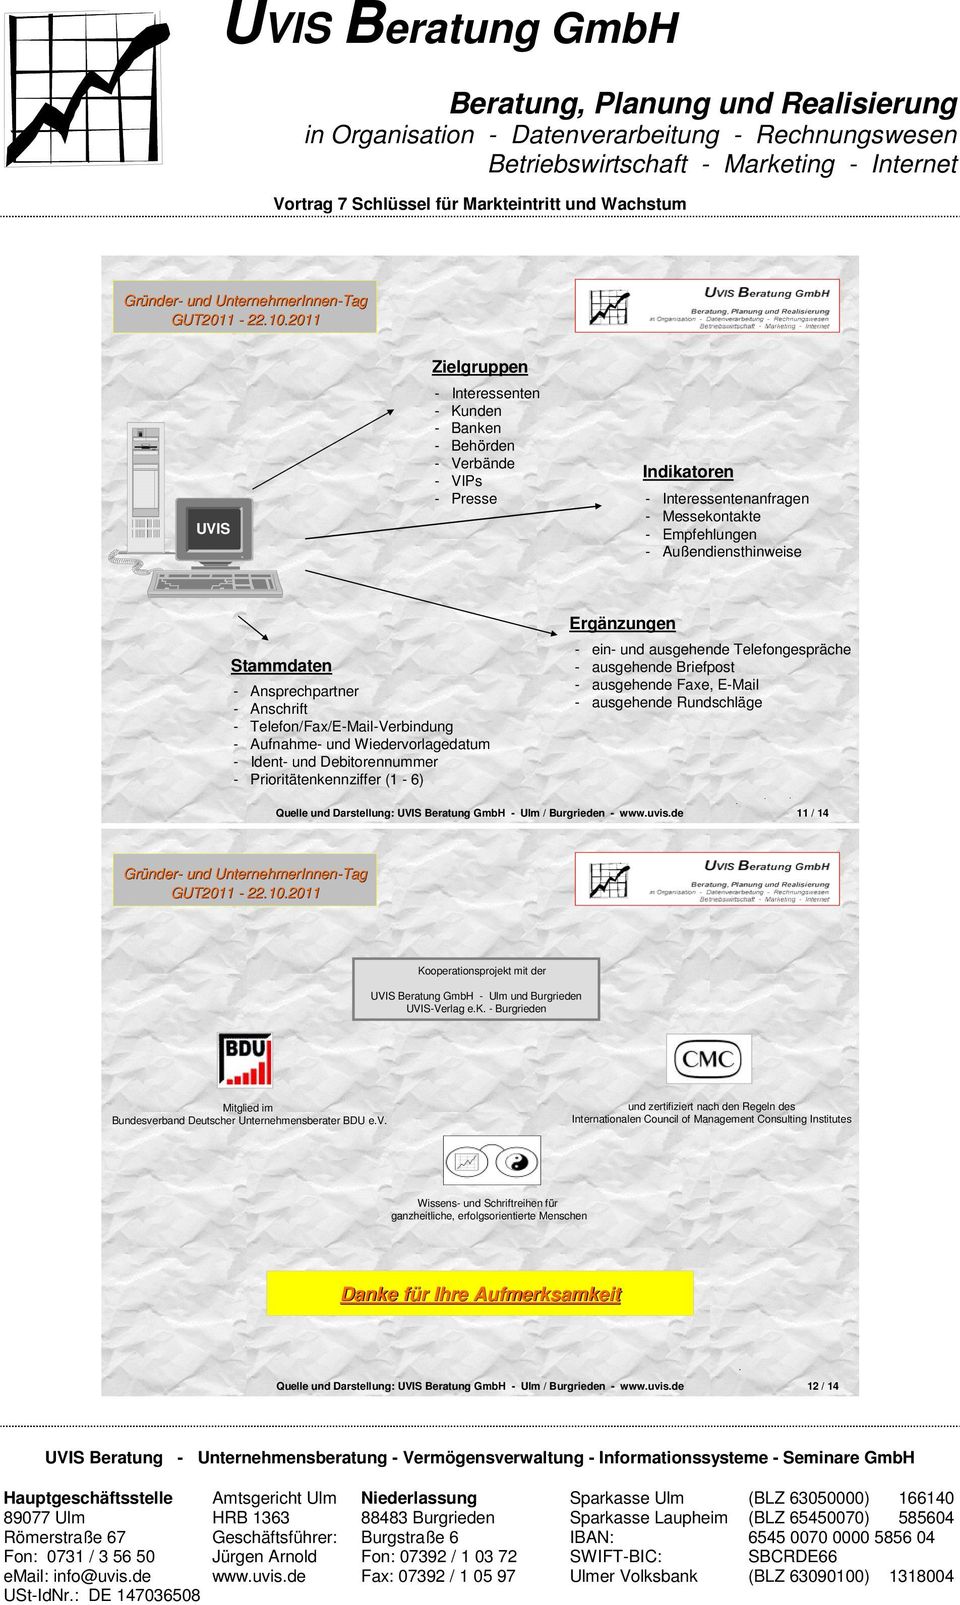 Wiedervorlagedatum - Ident- und Debitorennummer - Prioritätenkennziffer UVIS (1-6) Beratung GmbH - Ulm / 11 Quelle und Darstellung: Burgrieden - wwwuvisde 11 / 14 Kooperationsprojekt mit der UVIS